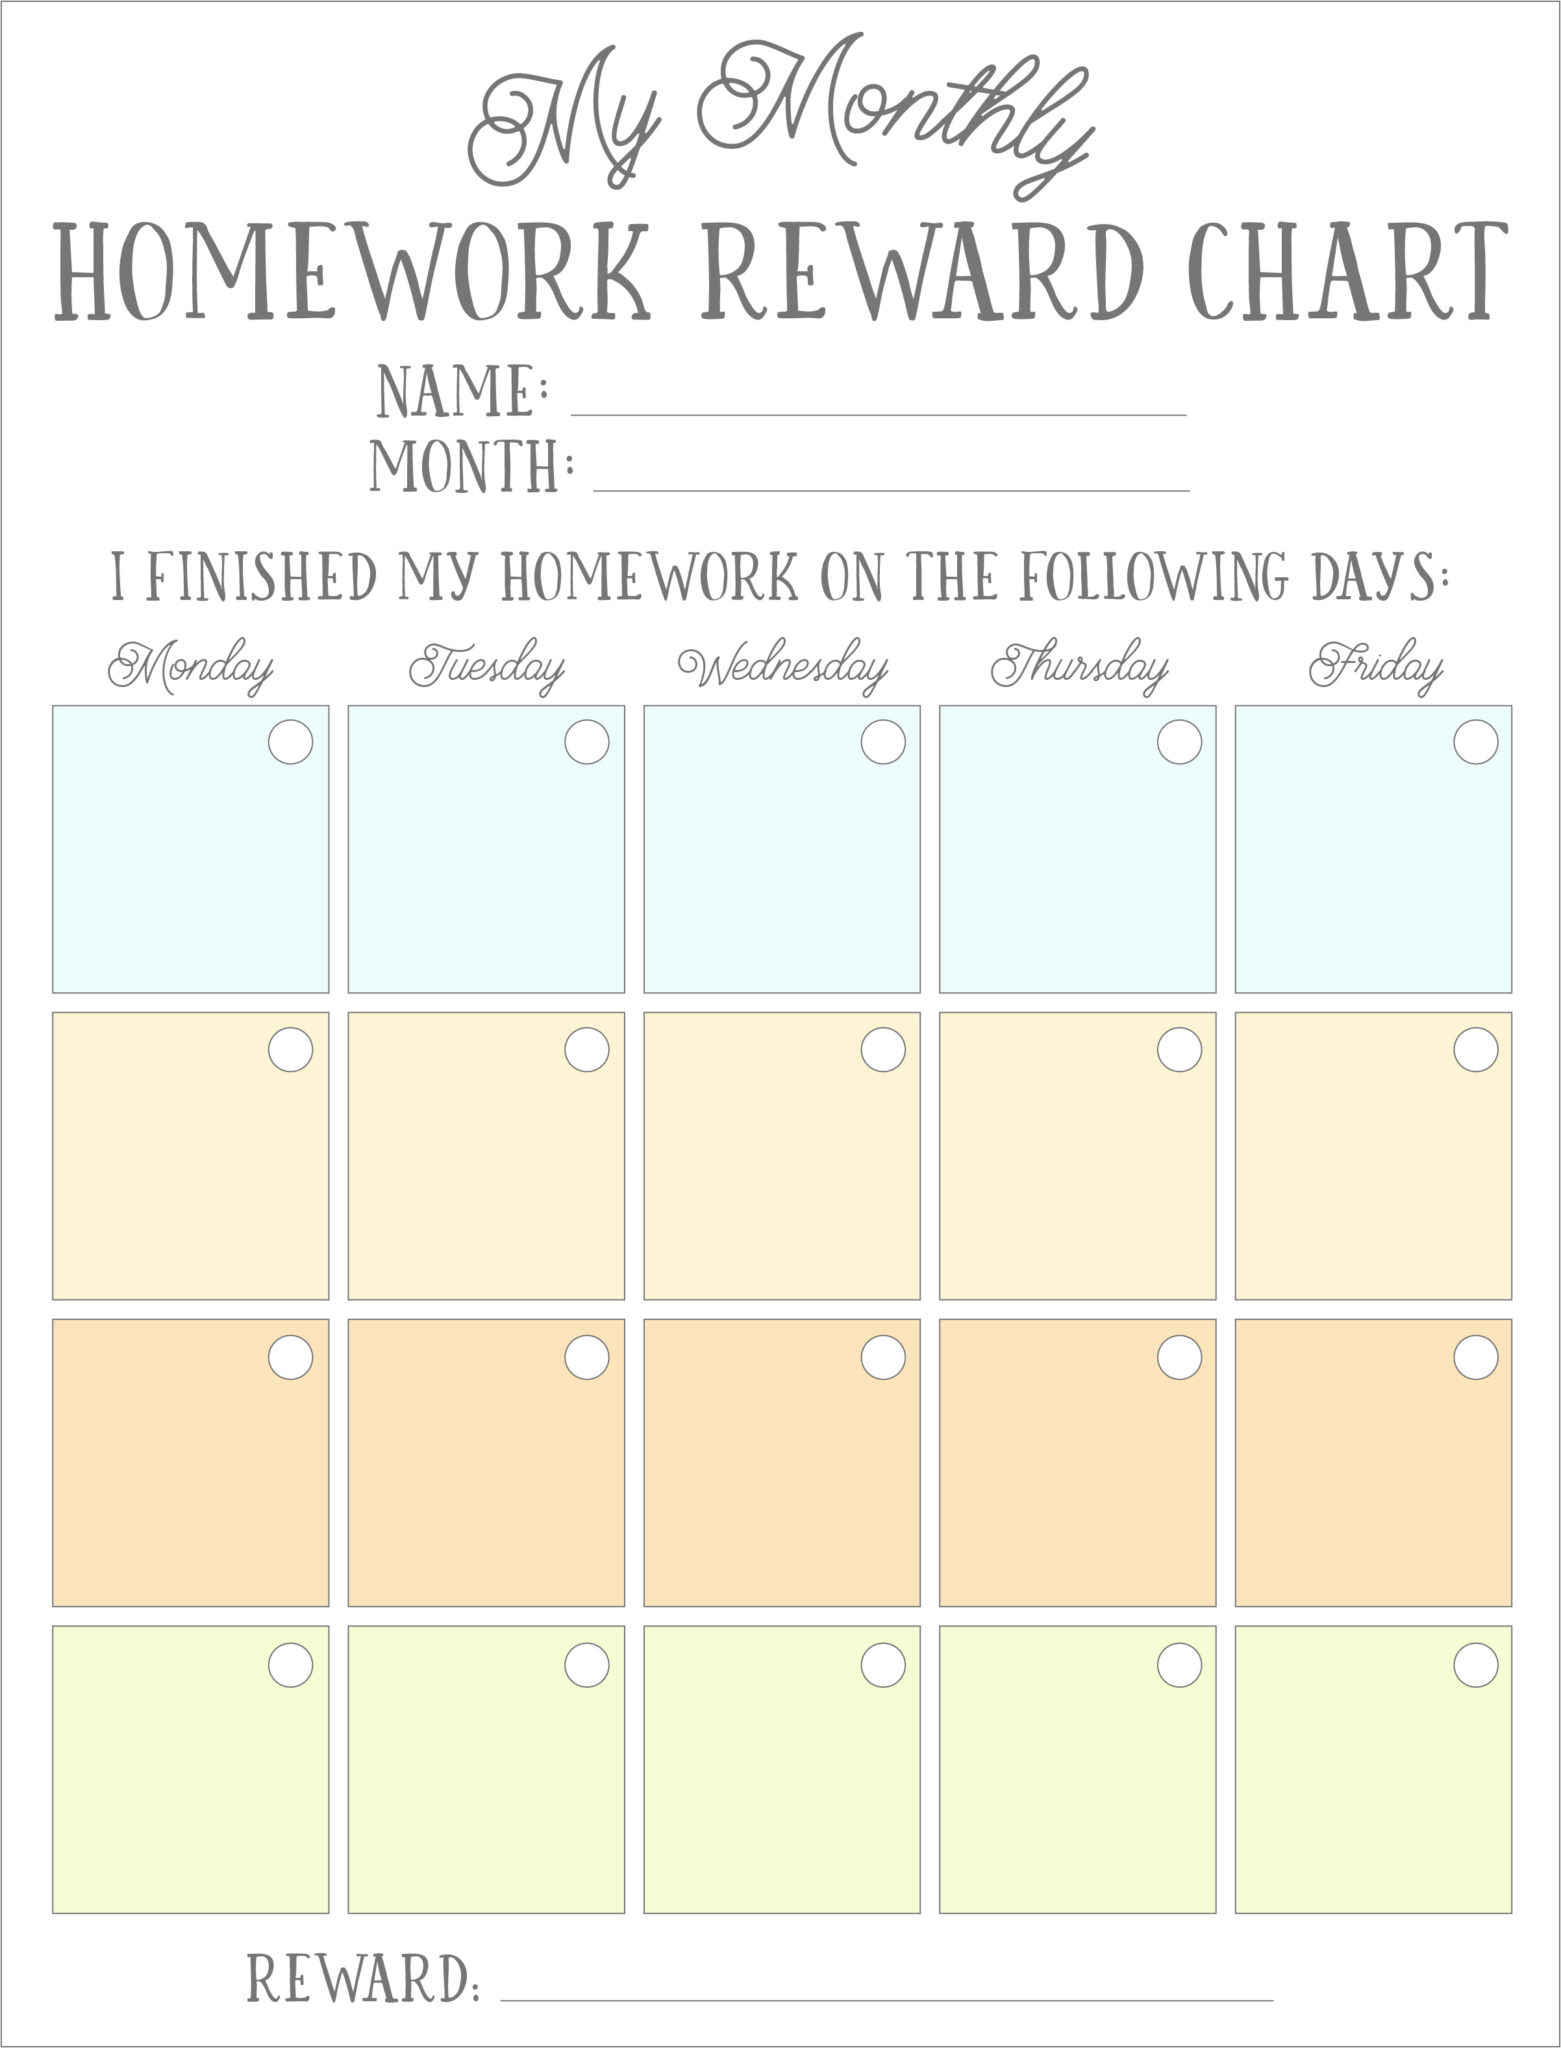 homework reward chart